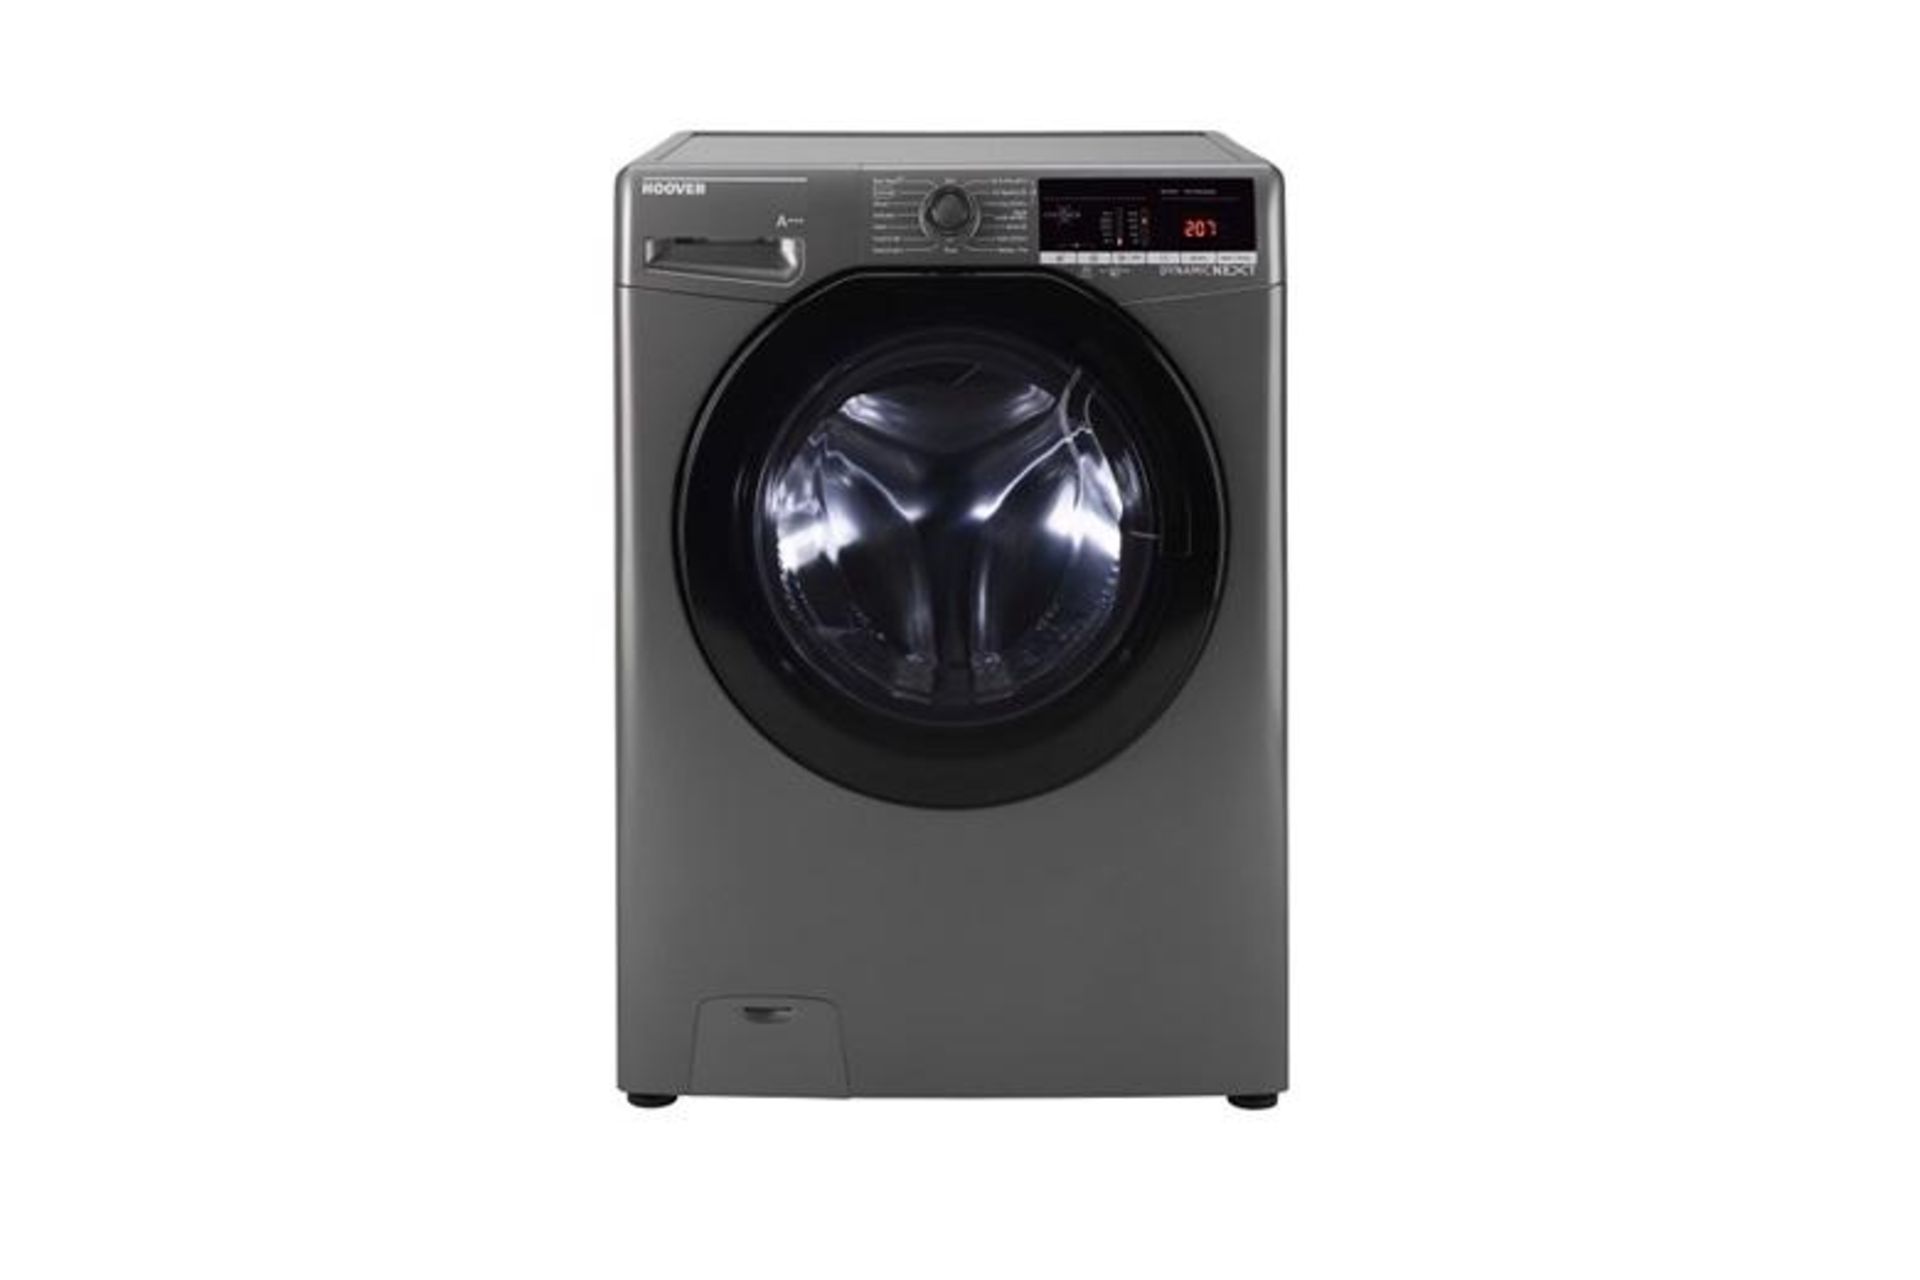 Mixed Lot of Seven Refurbished Appliances Including Beko 9KG Sensor Dryer in Black, manufacturer’s - Image 6 of 7